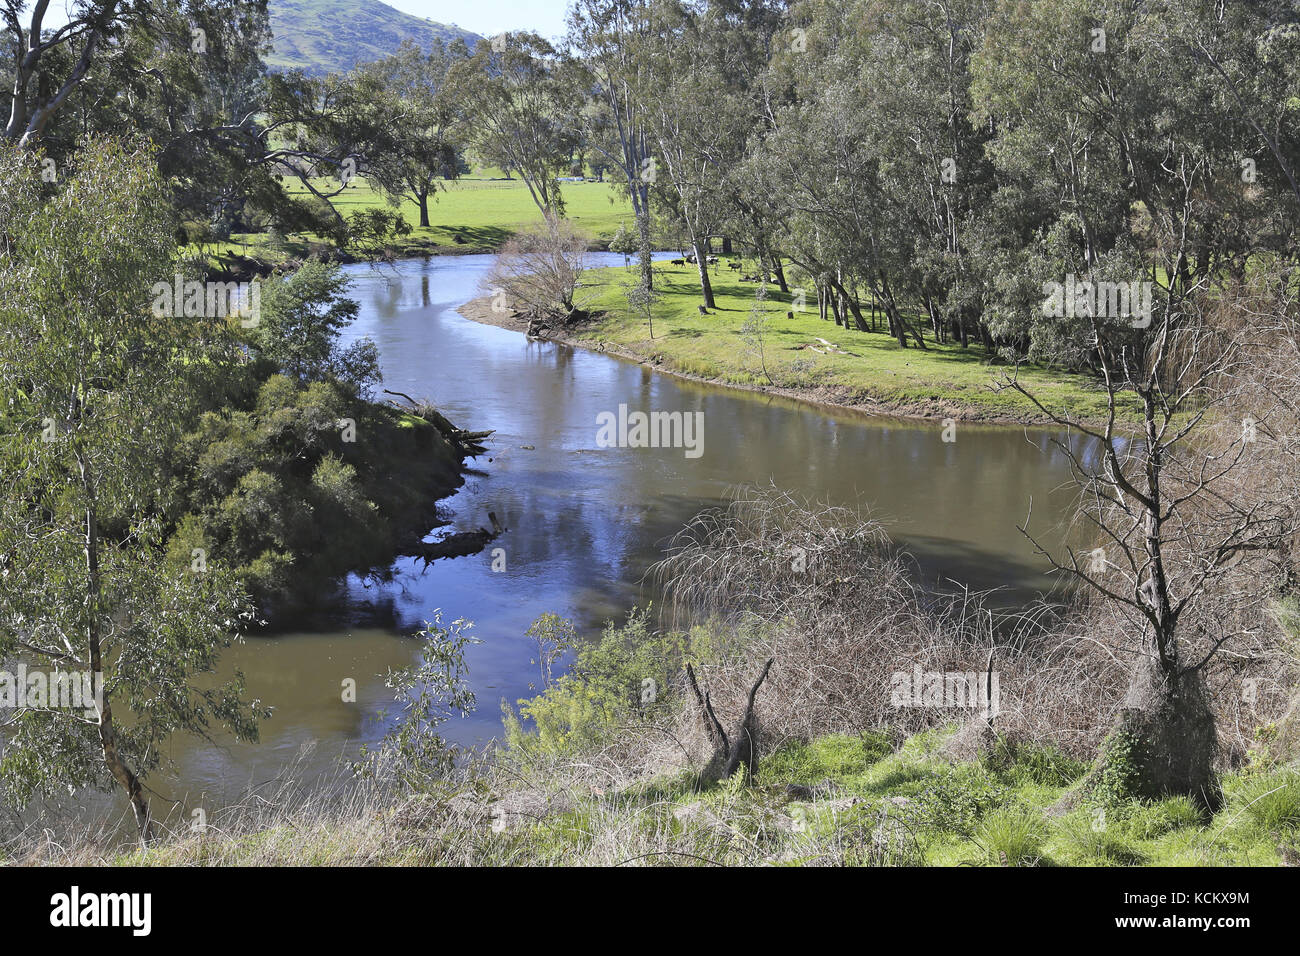 Tranquillo accesso al fiume Mitta Mitta che sfocia nel lago Hume per diventare parte del sistema di irrigazione del fiume Murray. Victoria nord-orientale, Austral Foto Stock